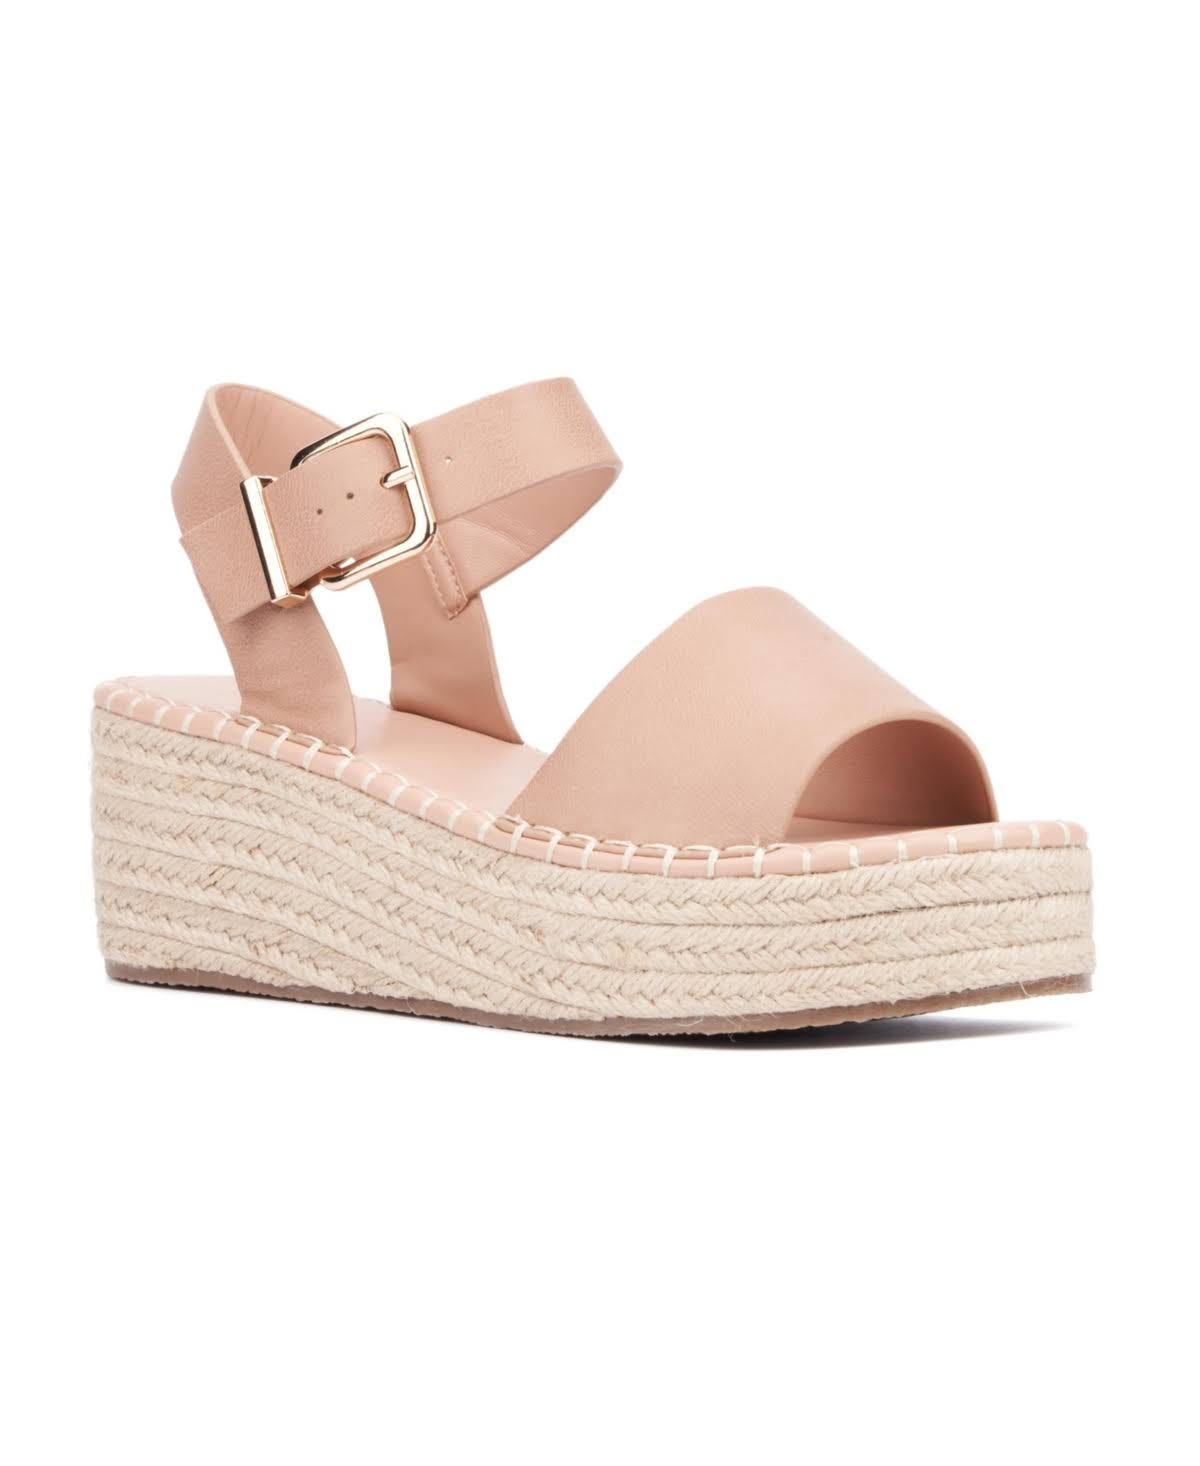 Elandra Platform Wedges: Comfortable Beige Sandals for Everyday Wear | Image